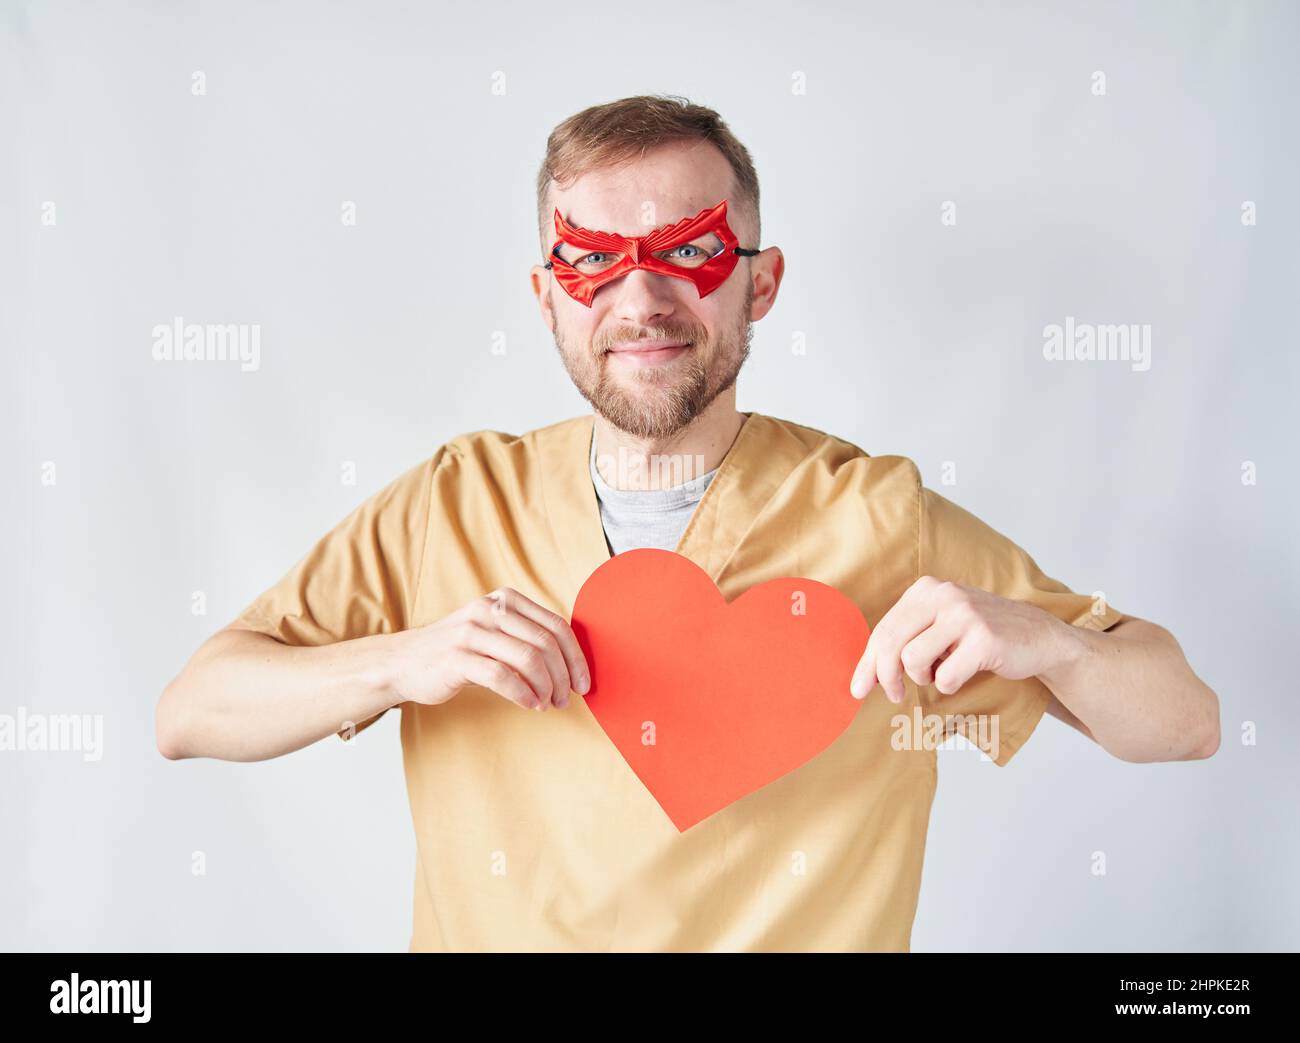 Fröhlich kaukasischen männlichen Kardiologen Arzt in medizinischen Uniform und roten Superhelden Augenmaske mit rotem Papier Herzform. Erwachsene Arzt Chirurg im Krankenhaus posiert über der Wand. Hochwertige Fotos Stockfoto